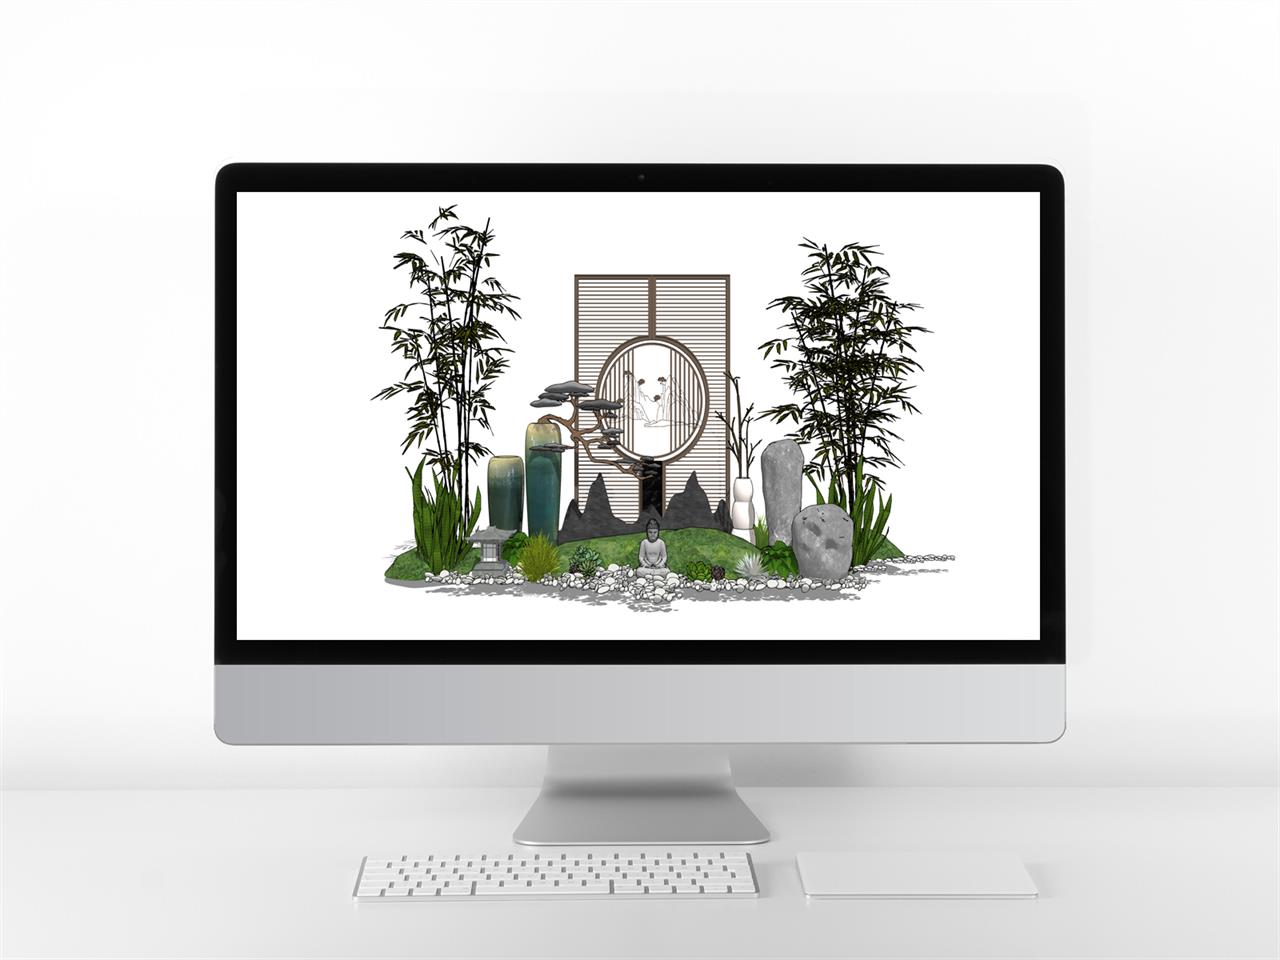 현대적인 정원조경 디자인 스케치업 템플릿 다운 미리보기